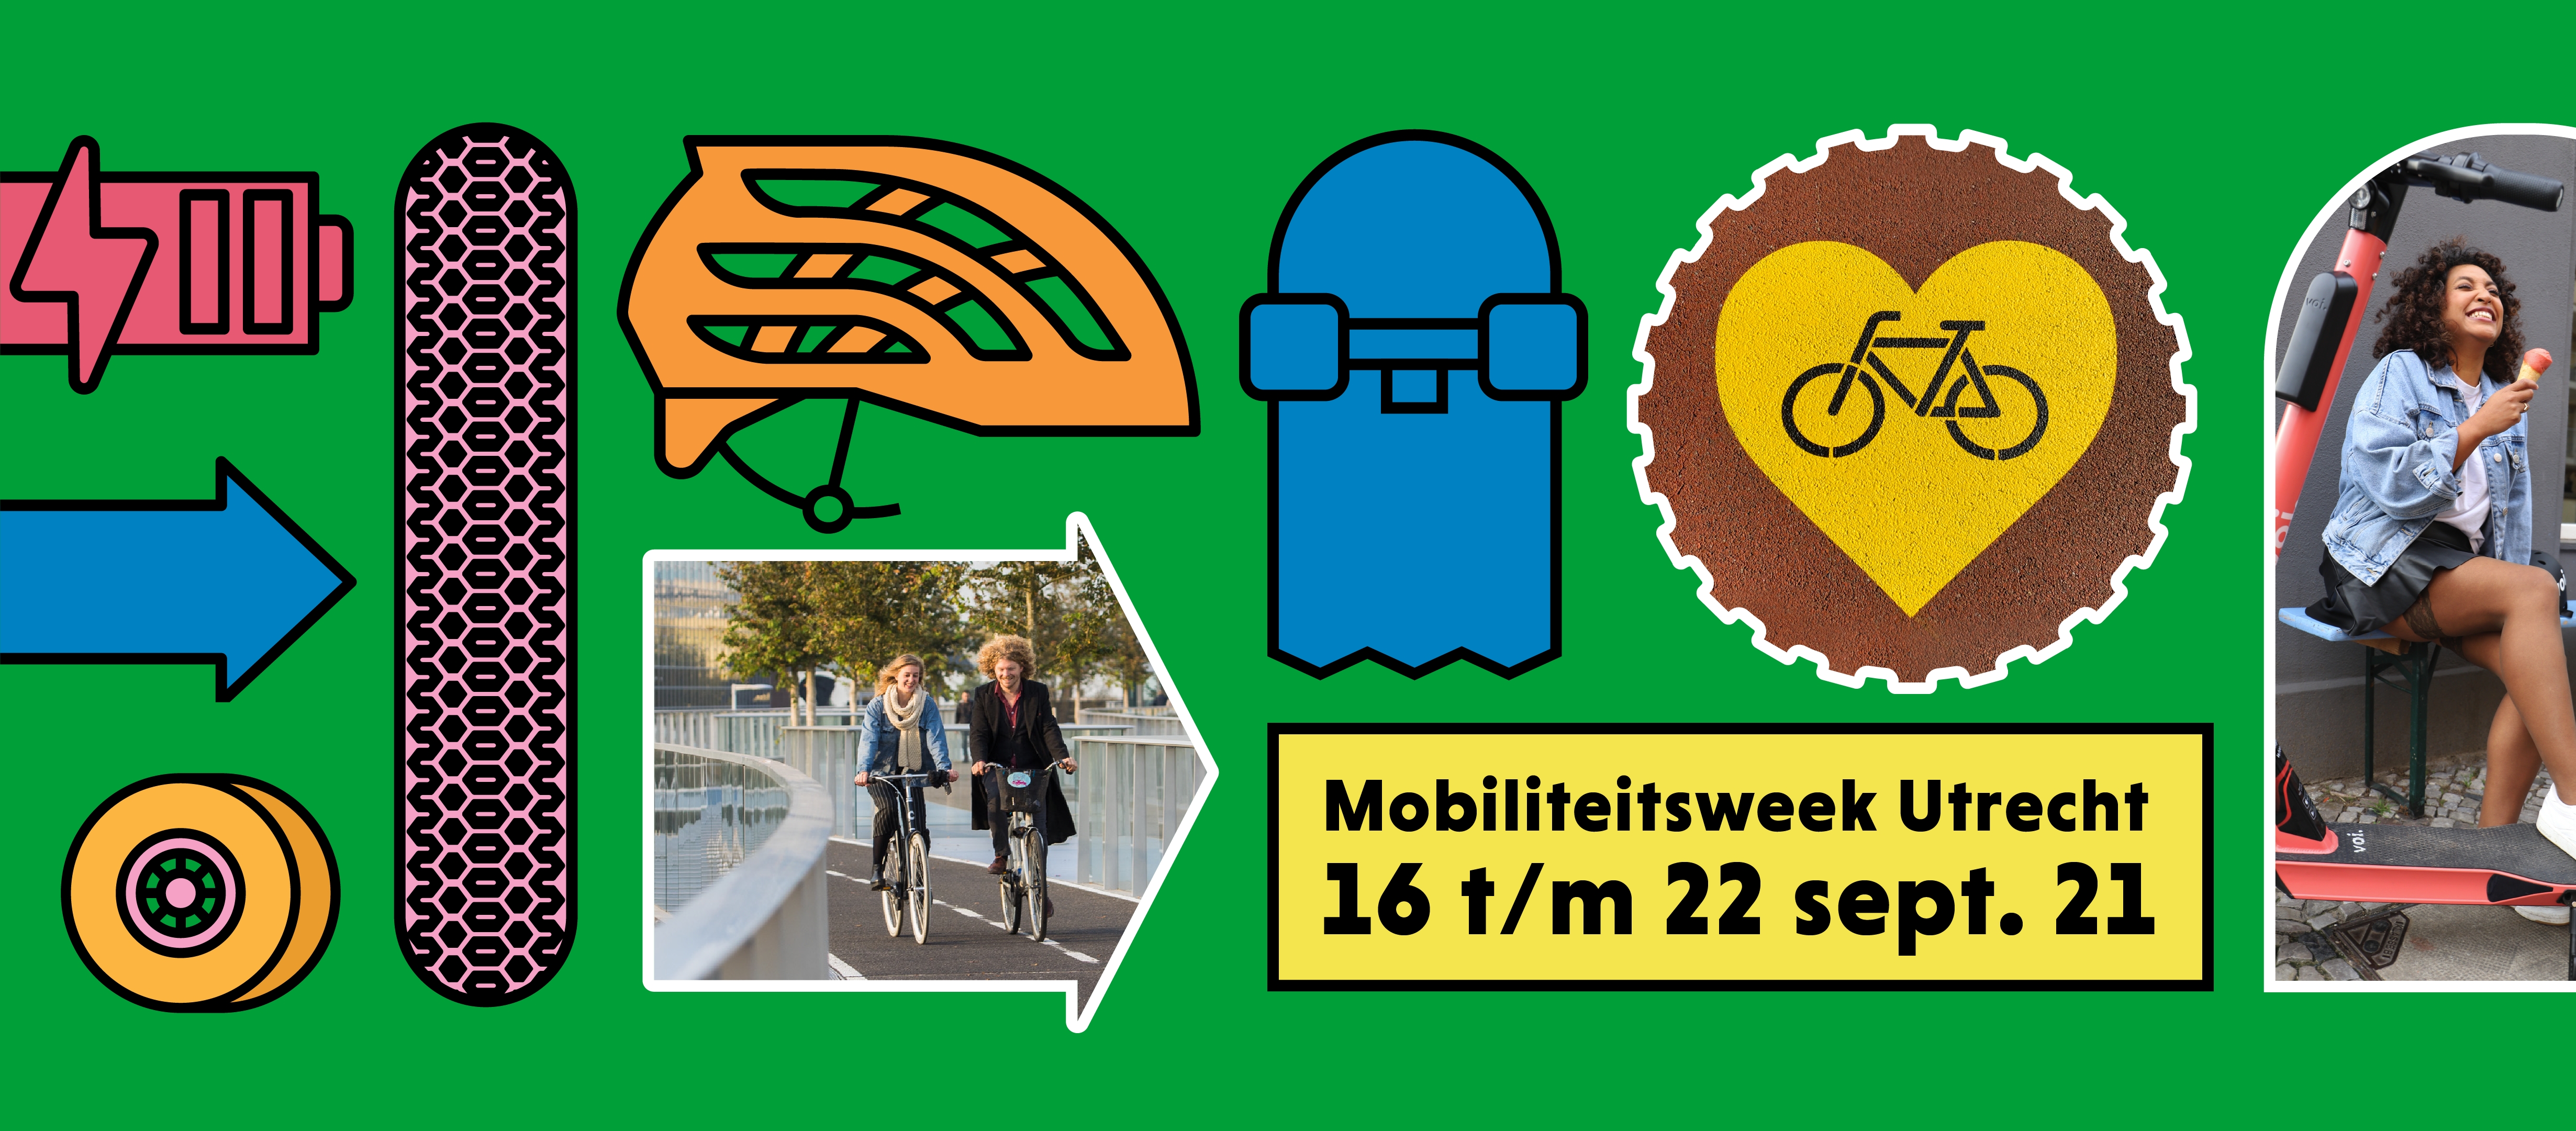 mobiliteitsweek utrecht 2021 banner let's go, regio